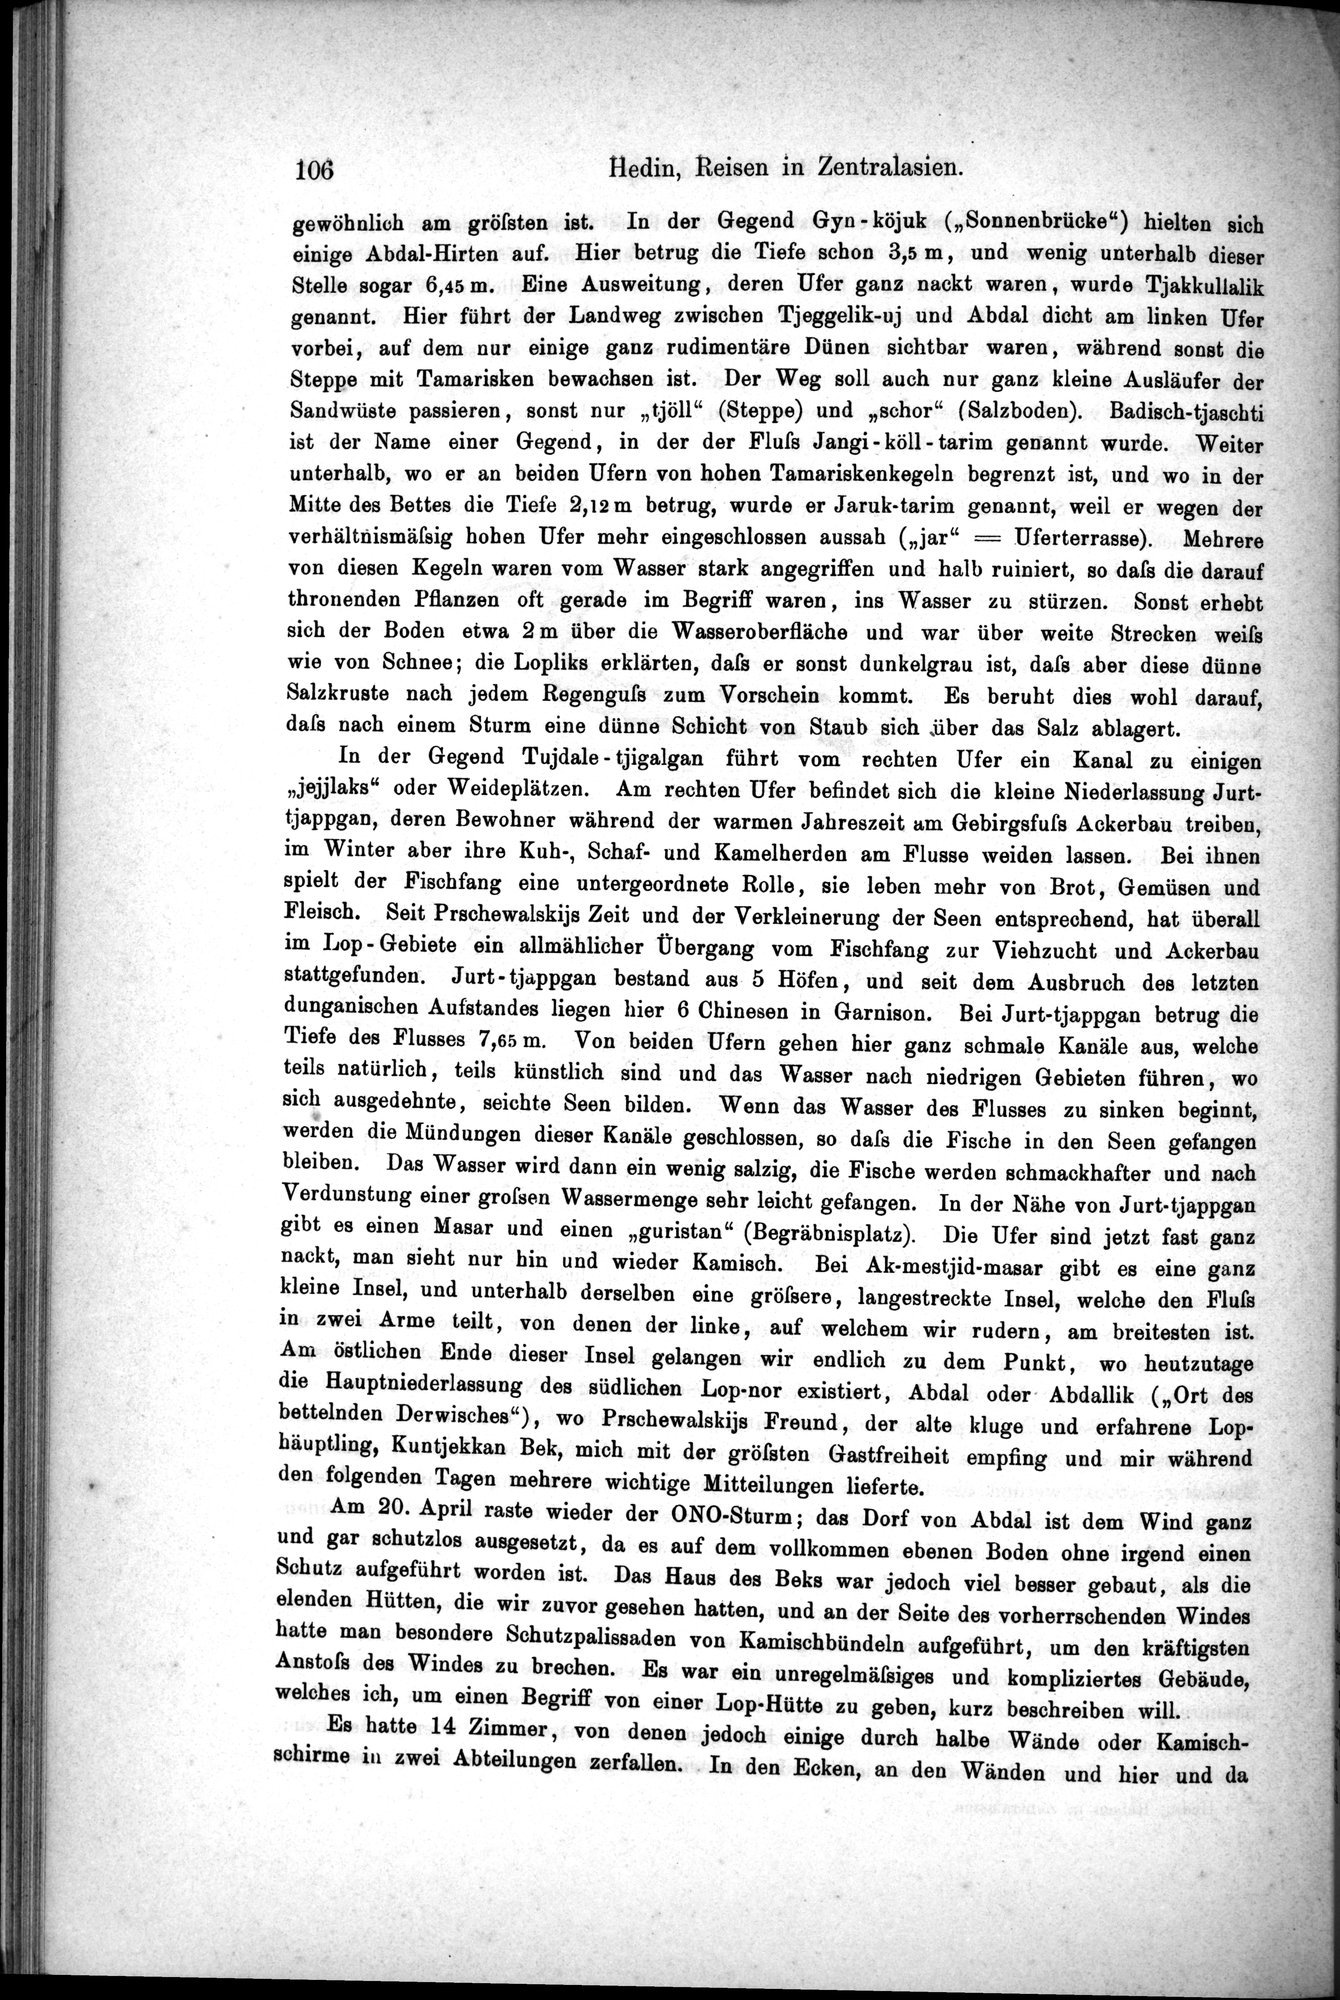 Die Geographische-Wissenschaftlichen Ergebnisse meiner Reisen in Zentralasien, 1894-1897 : vol.1 / Page 118 (Grayscale High Resolution Image)